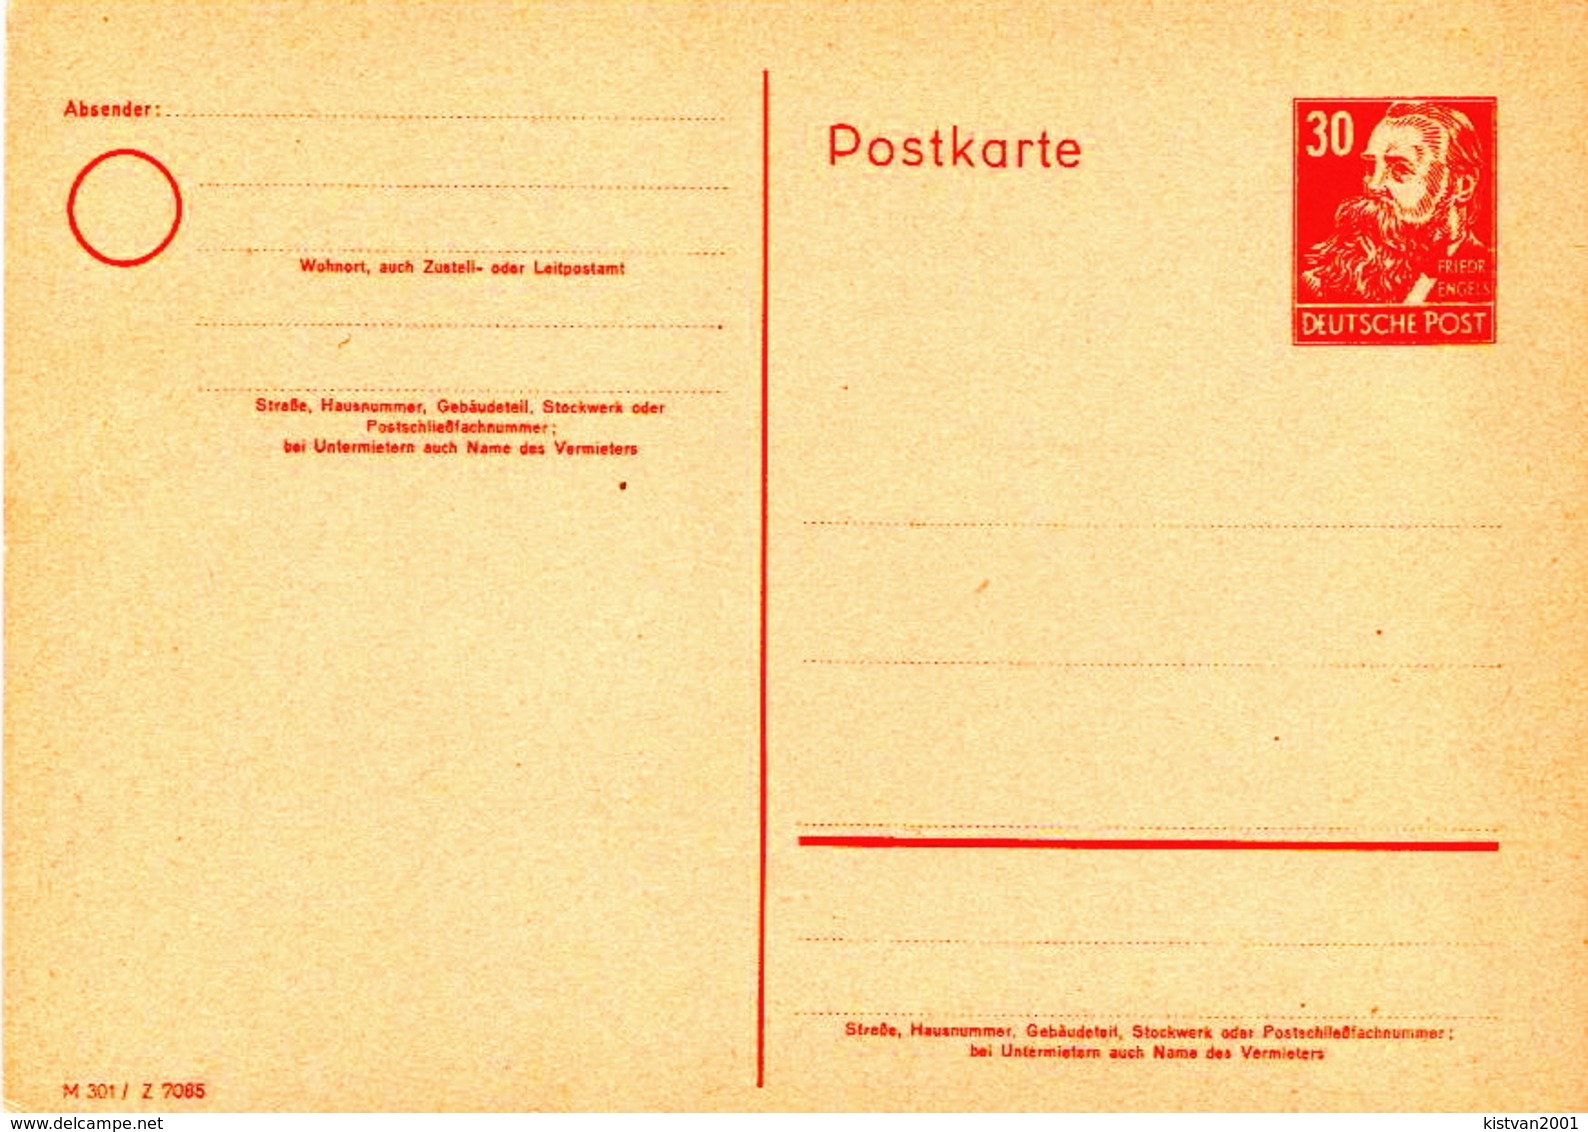 Germany Mint Postal Stationery Card ( Ganzsache), M301/Z 7085 - Postcards - Mint